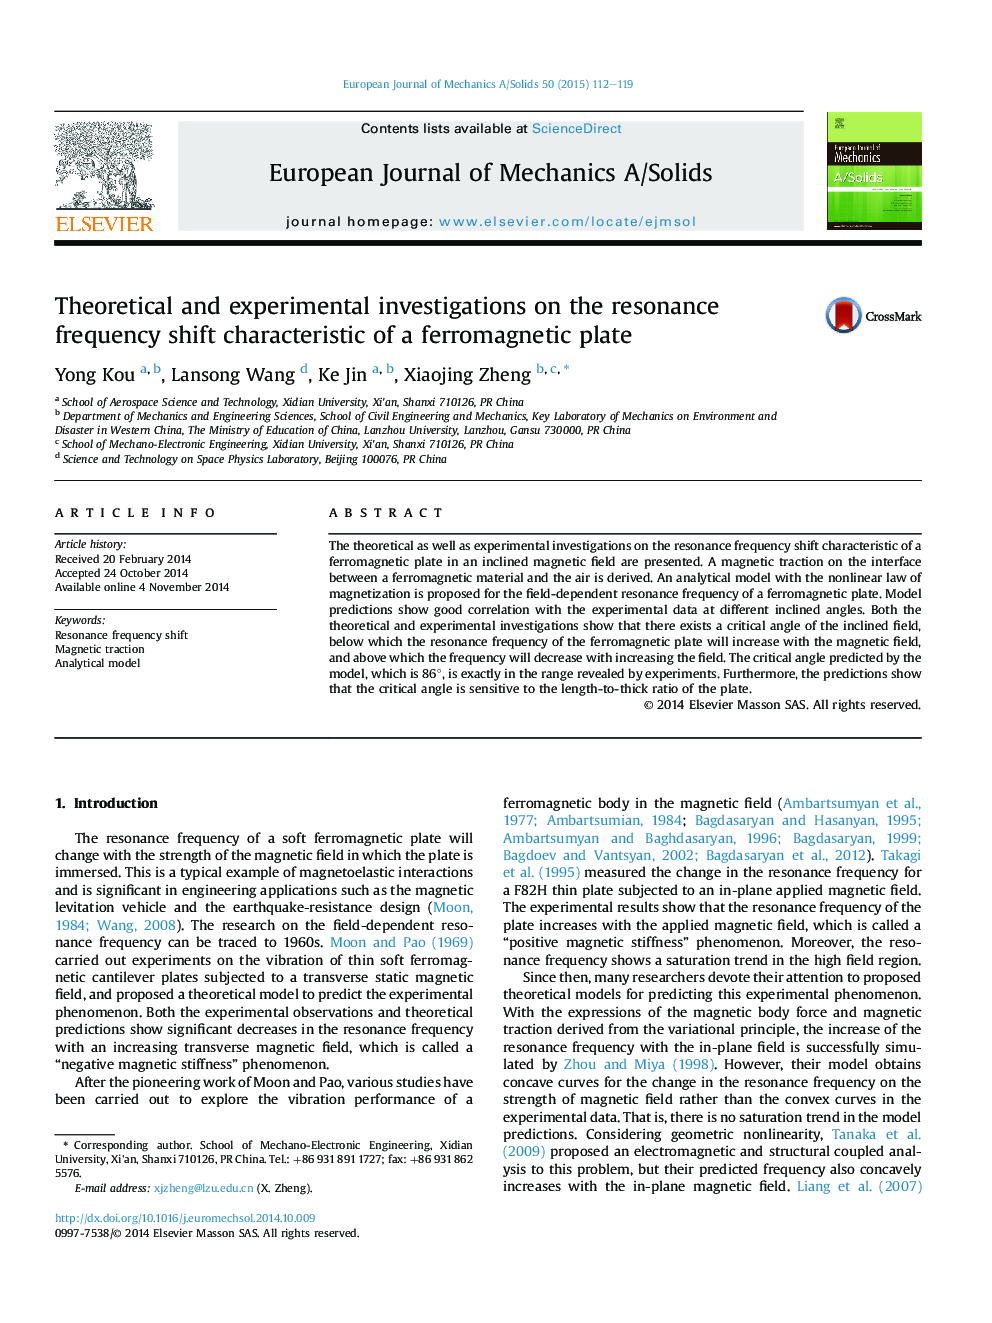 تحقیقات نظری و تجربی در مورد تغییر شتاب دهنده رزونانس یک صفحه فرومغناطیس 